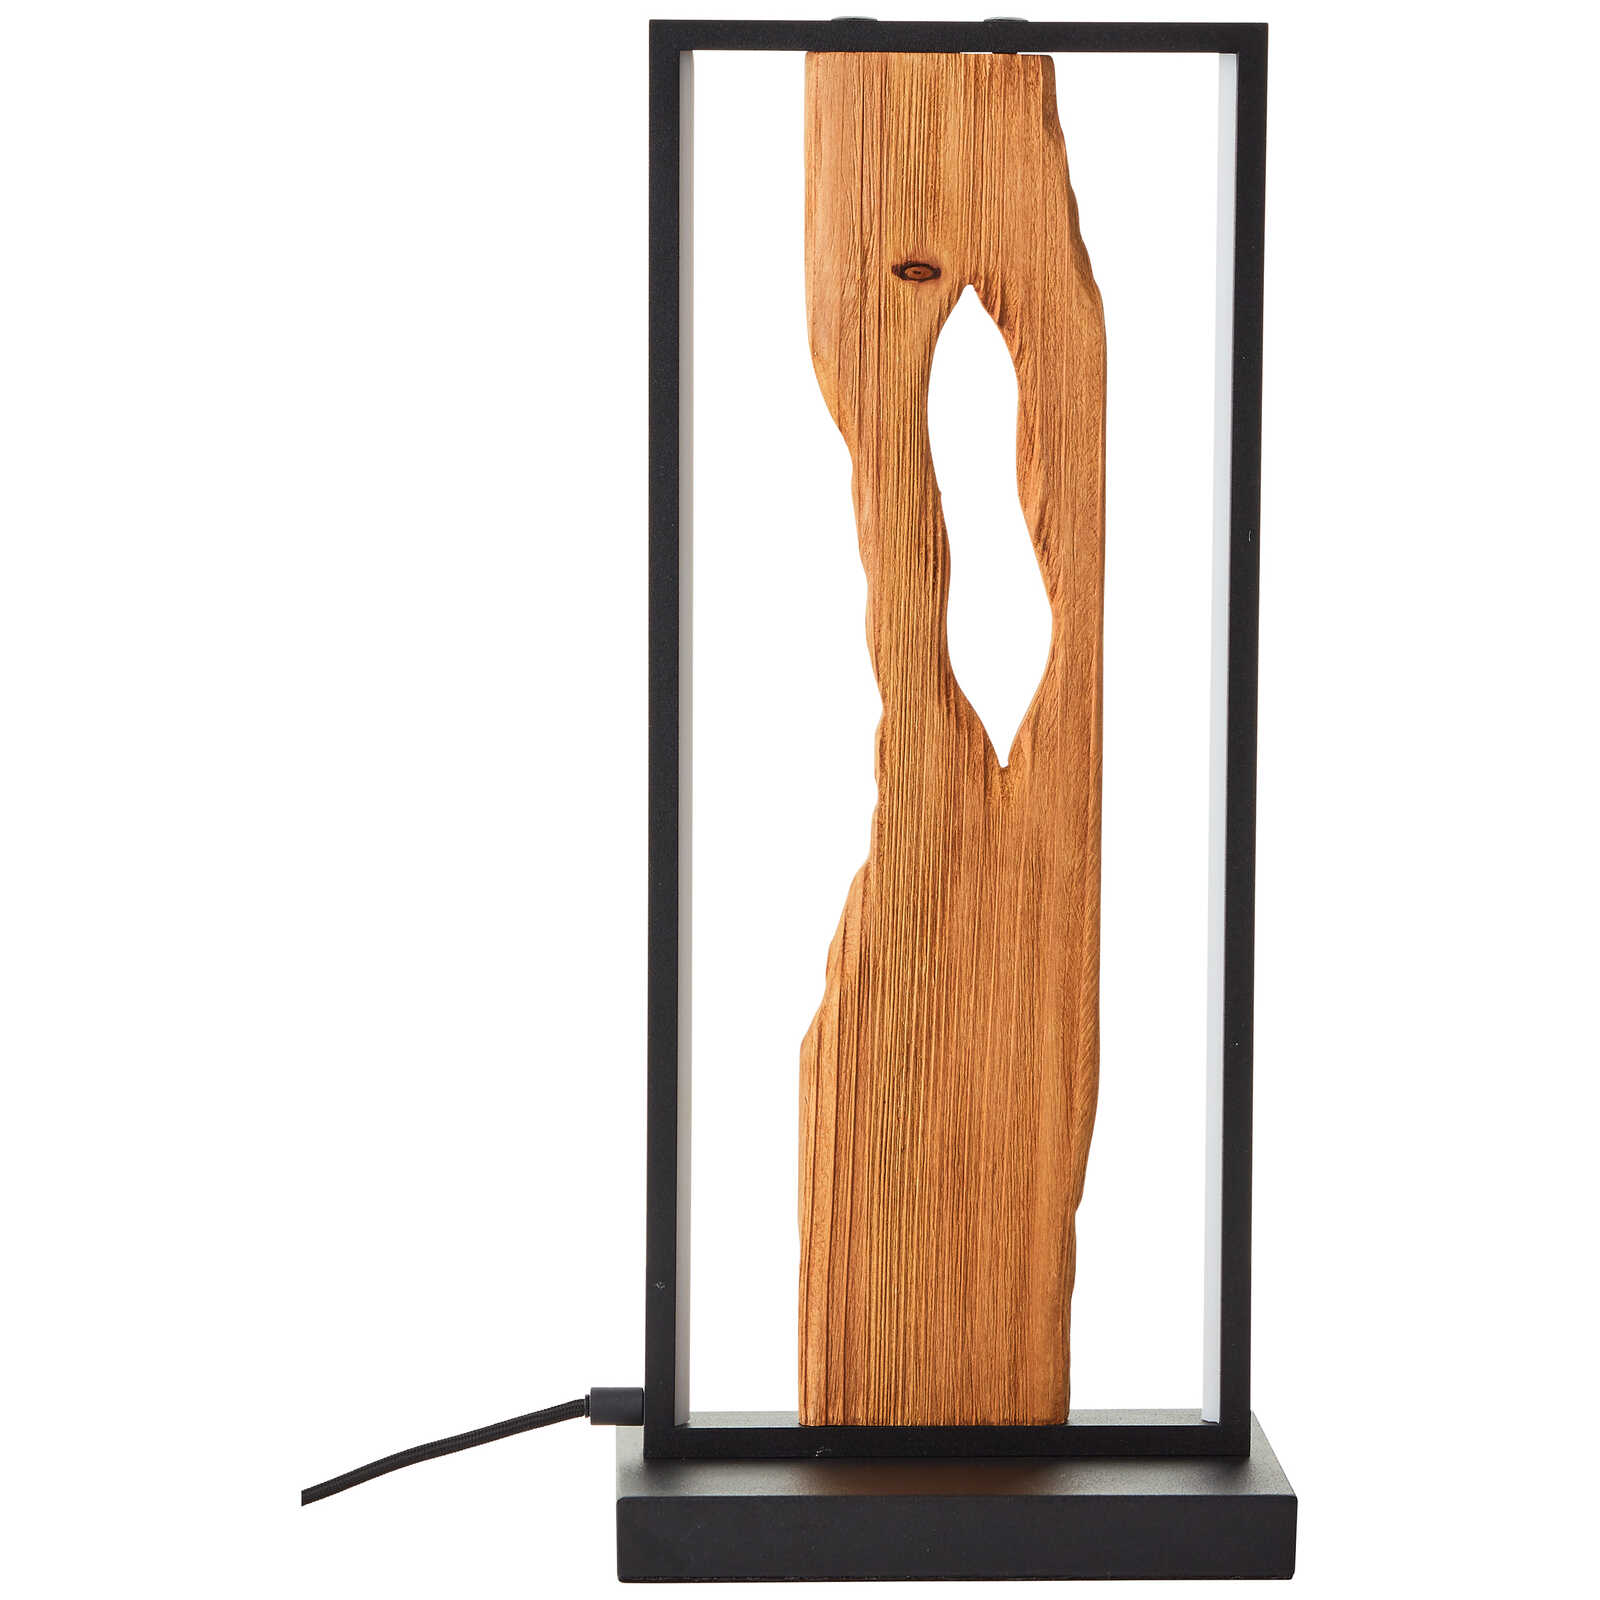             Lampe de table en bois - Elea 3 - Marron
        